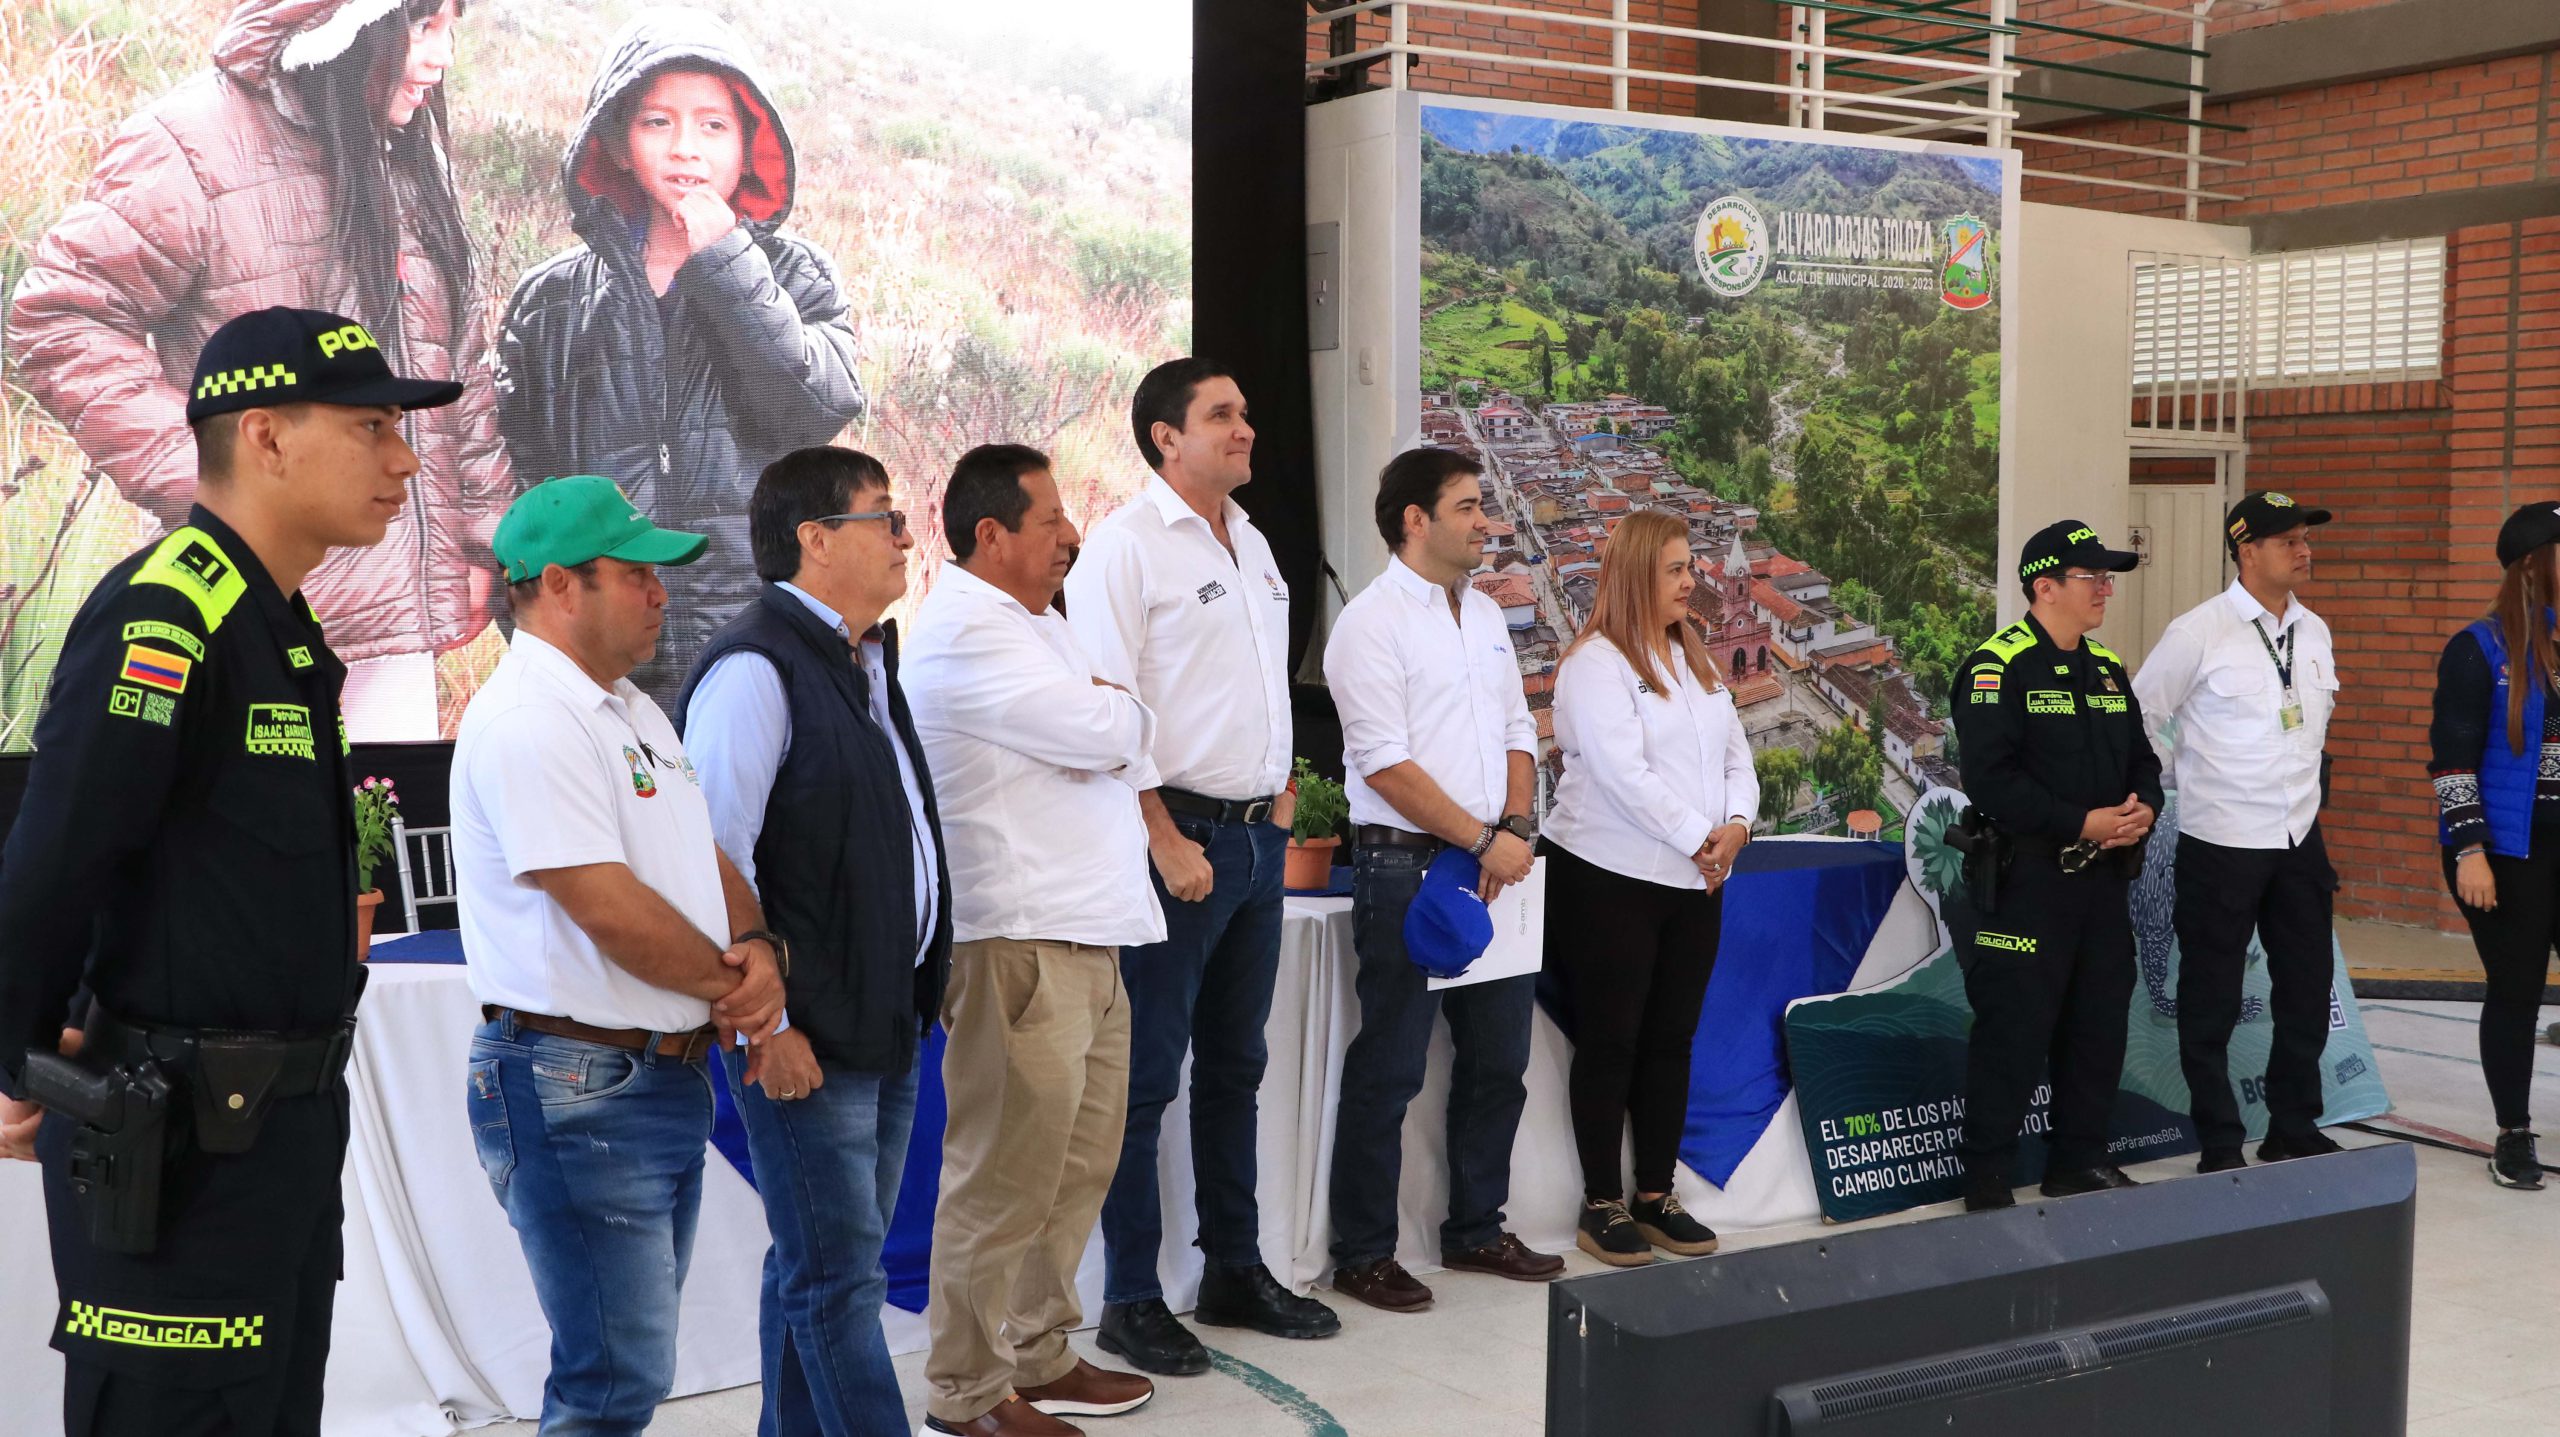 Más de 247 hectáreas serán protegidas y conservadas por familias campesinas en el municipio de Charta.